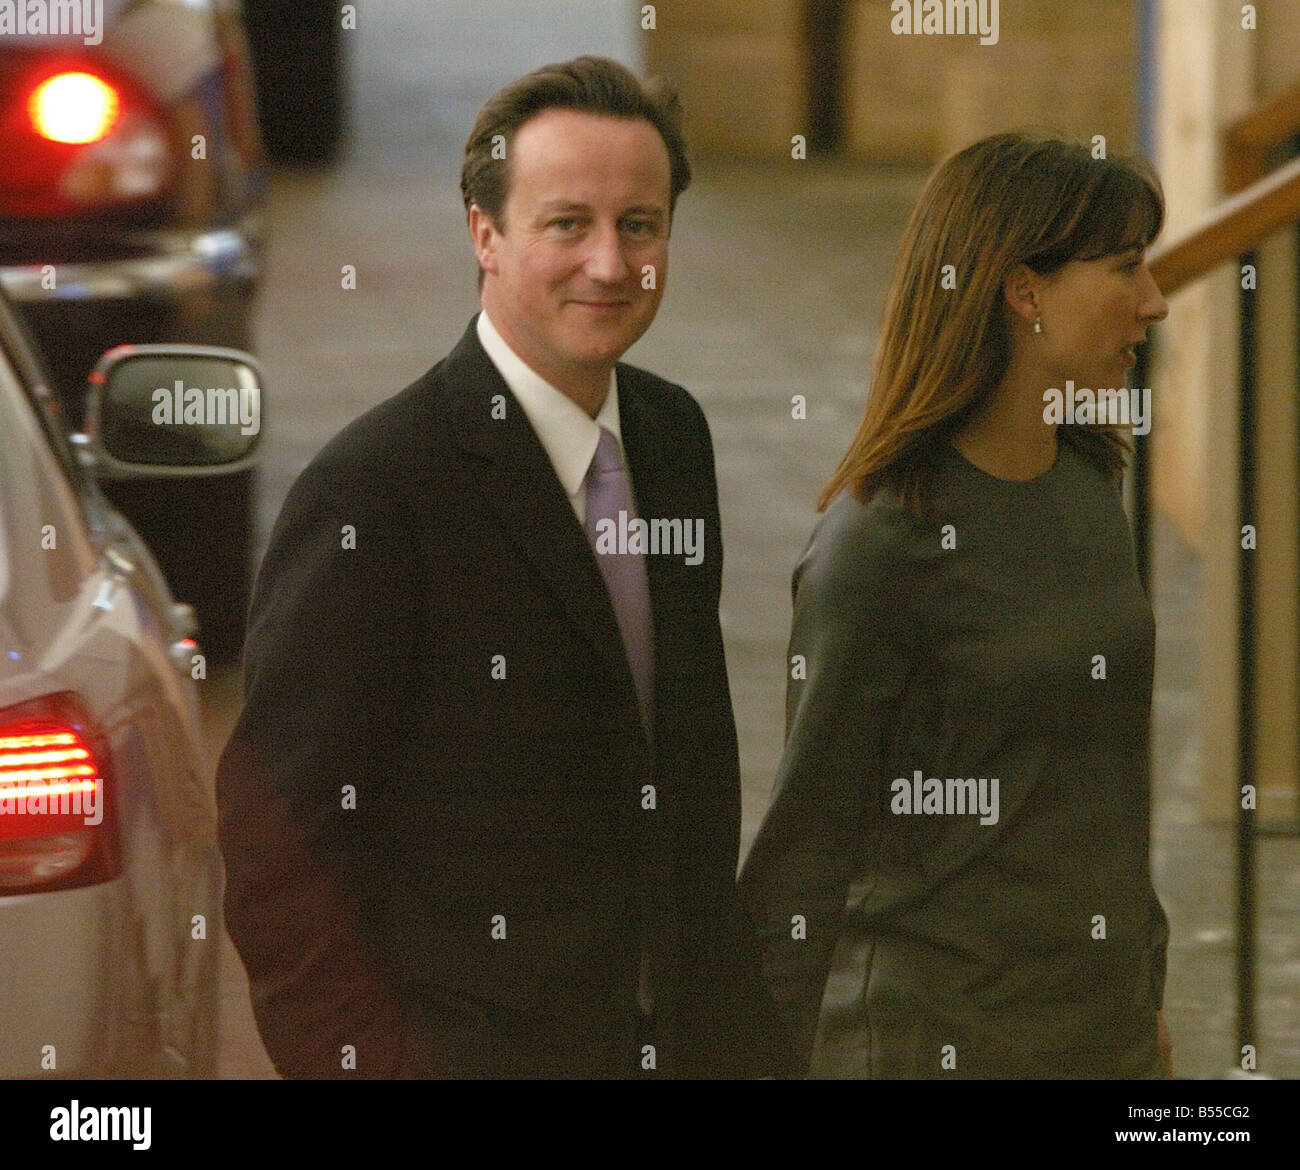 2007 Blackppol Conferencia del Partido Conservador, David Cameron, y su esposa Samantha Cameron llegar a los jardines de invierno Foto de stock